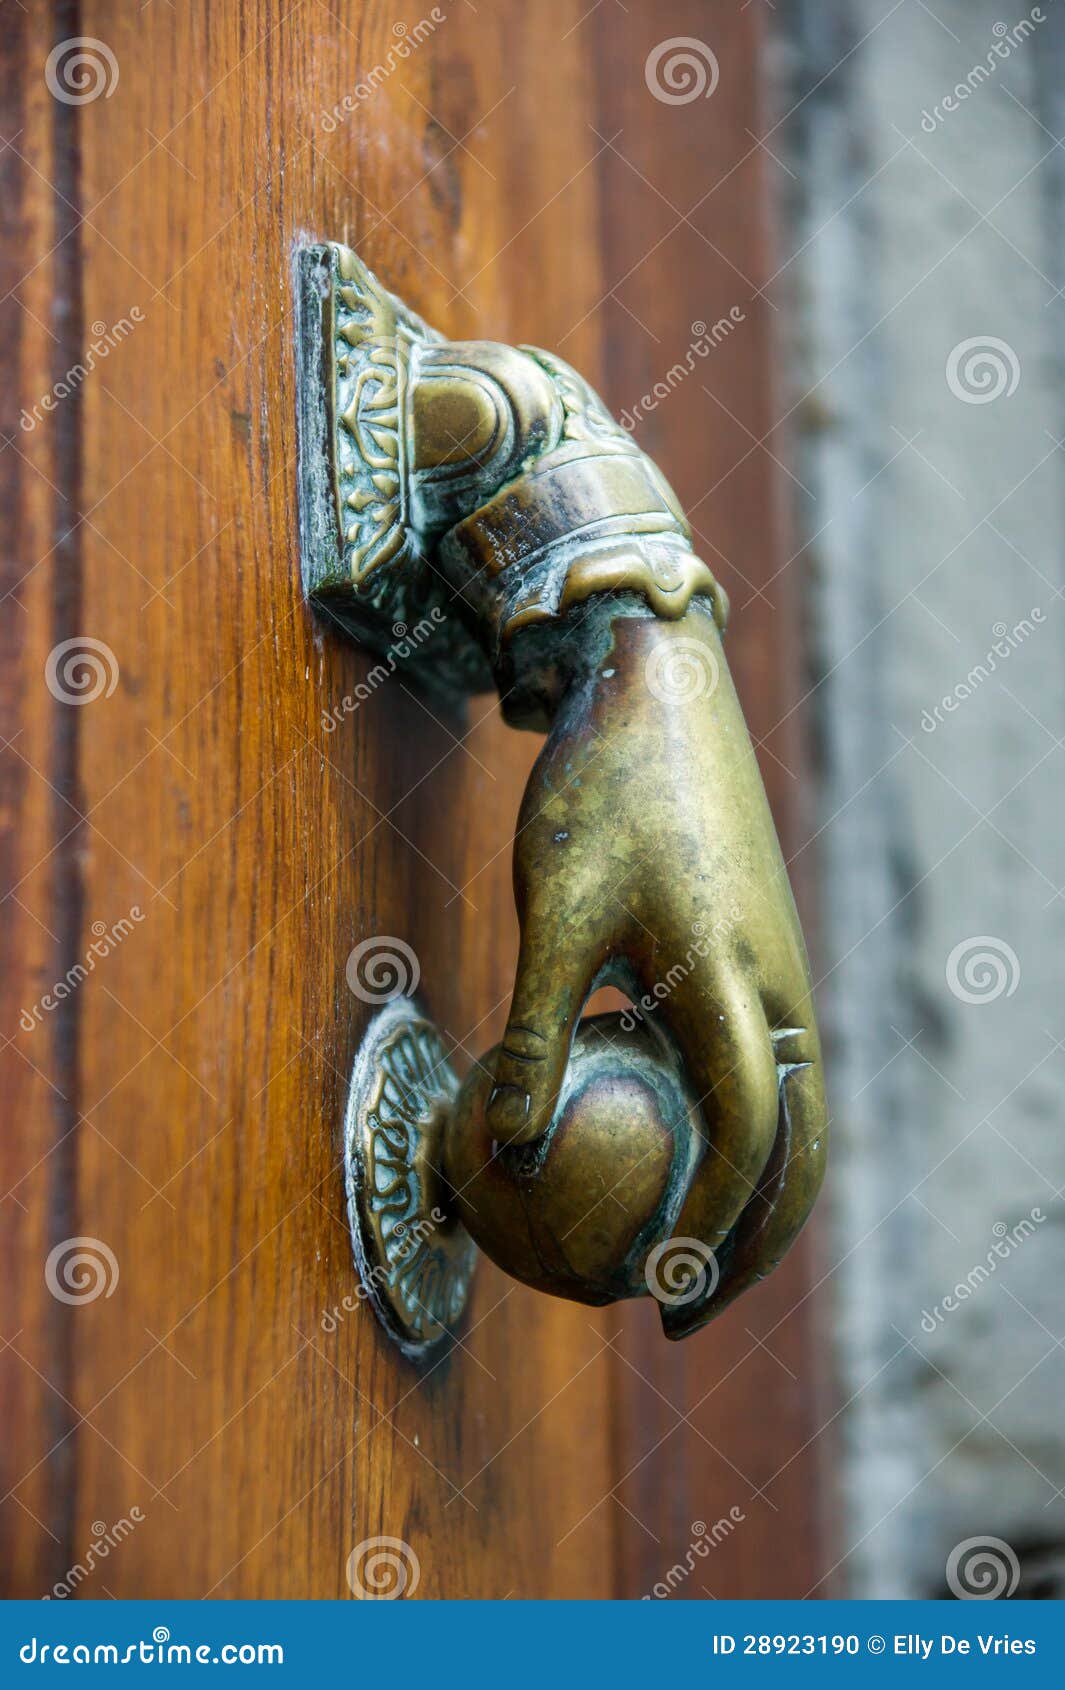 Стучало купить. Стучит в дверь. Кольцо на двери для стука. Кольцо для стучания в дверь. Подвес для стука в дверь.